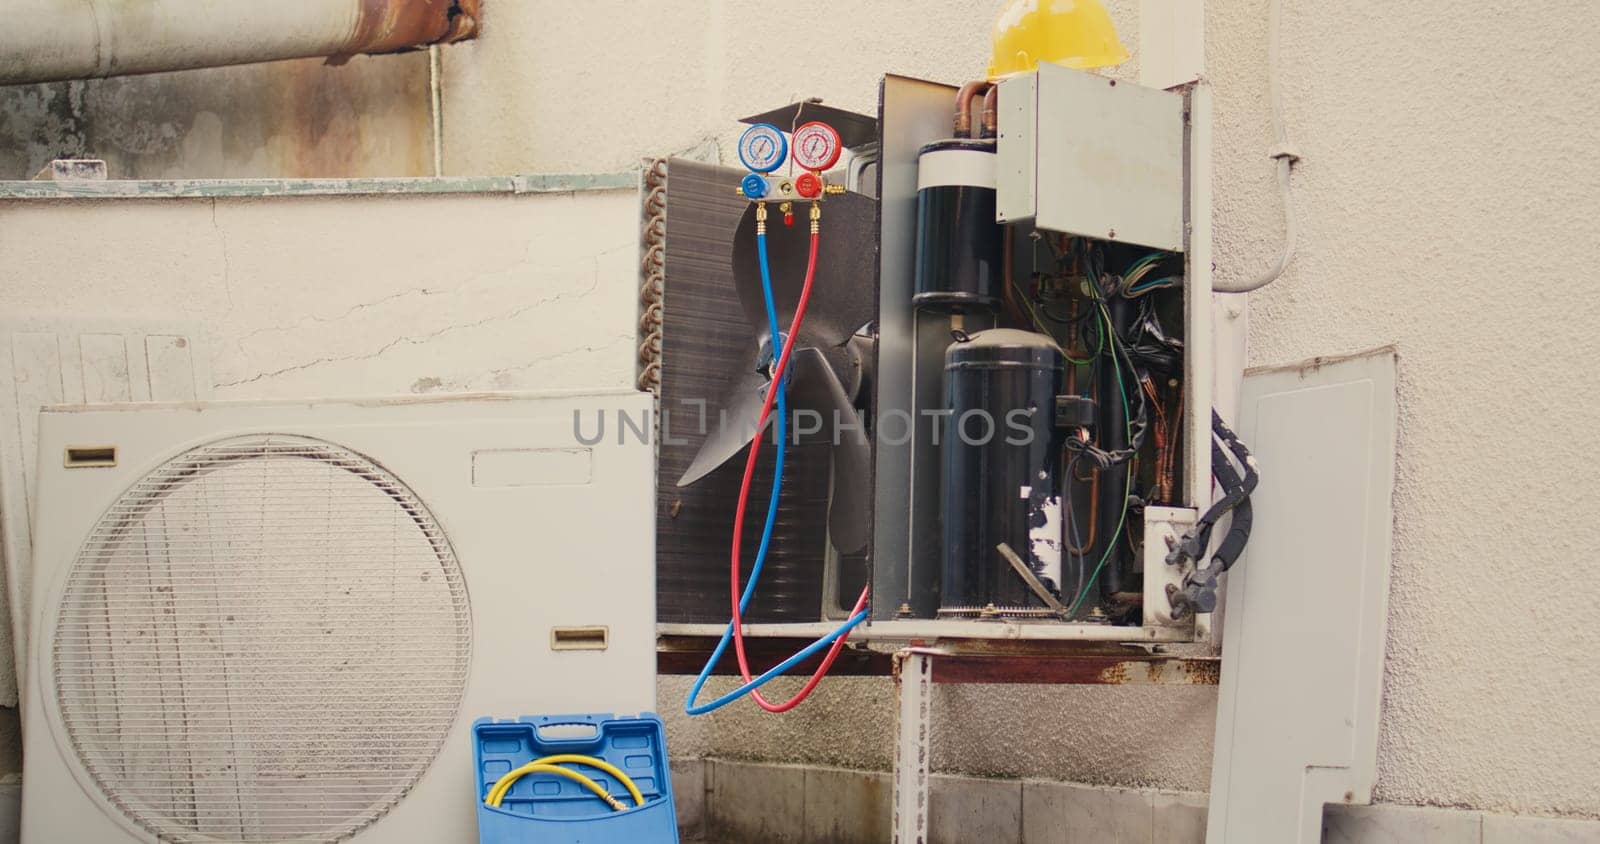 Broken outdoor air cooling unit by DCStudio